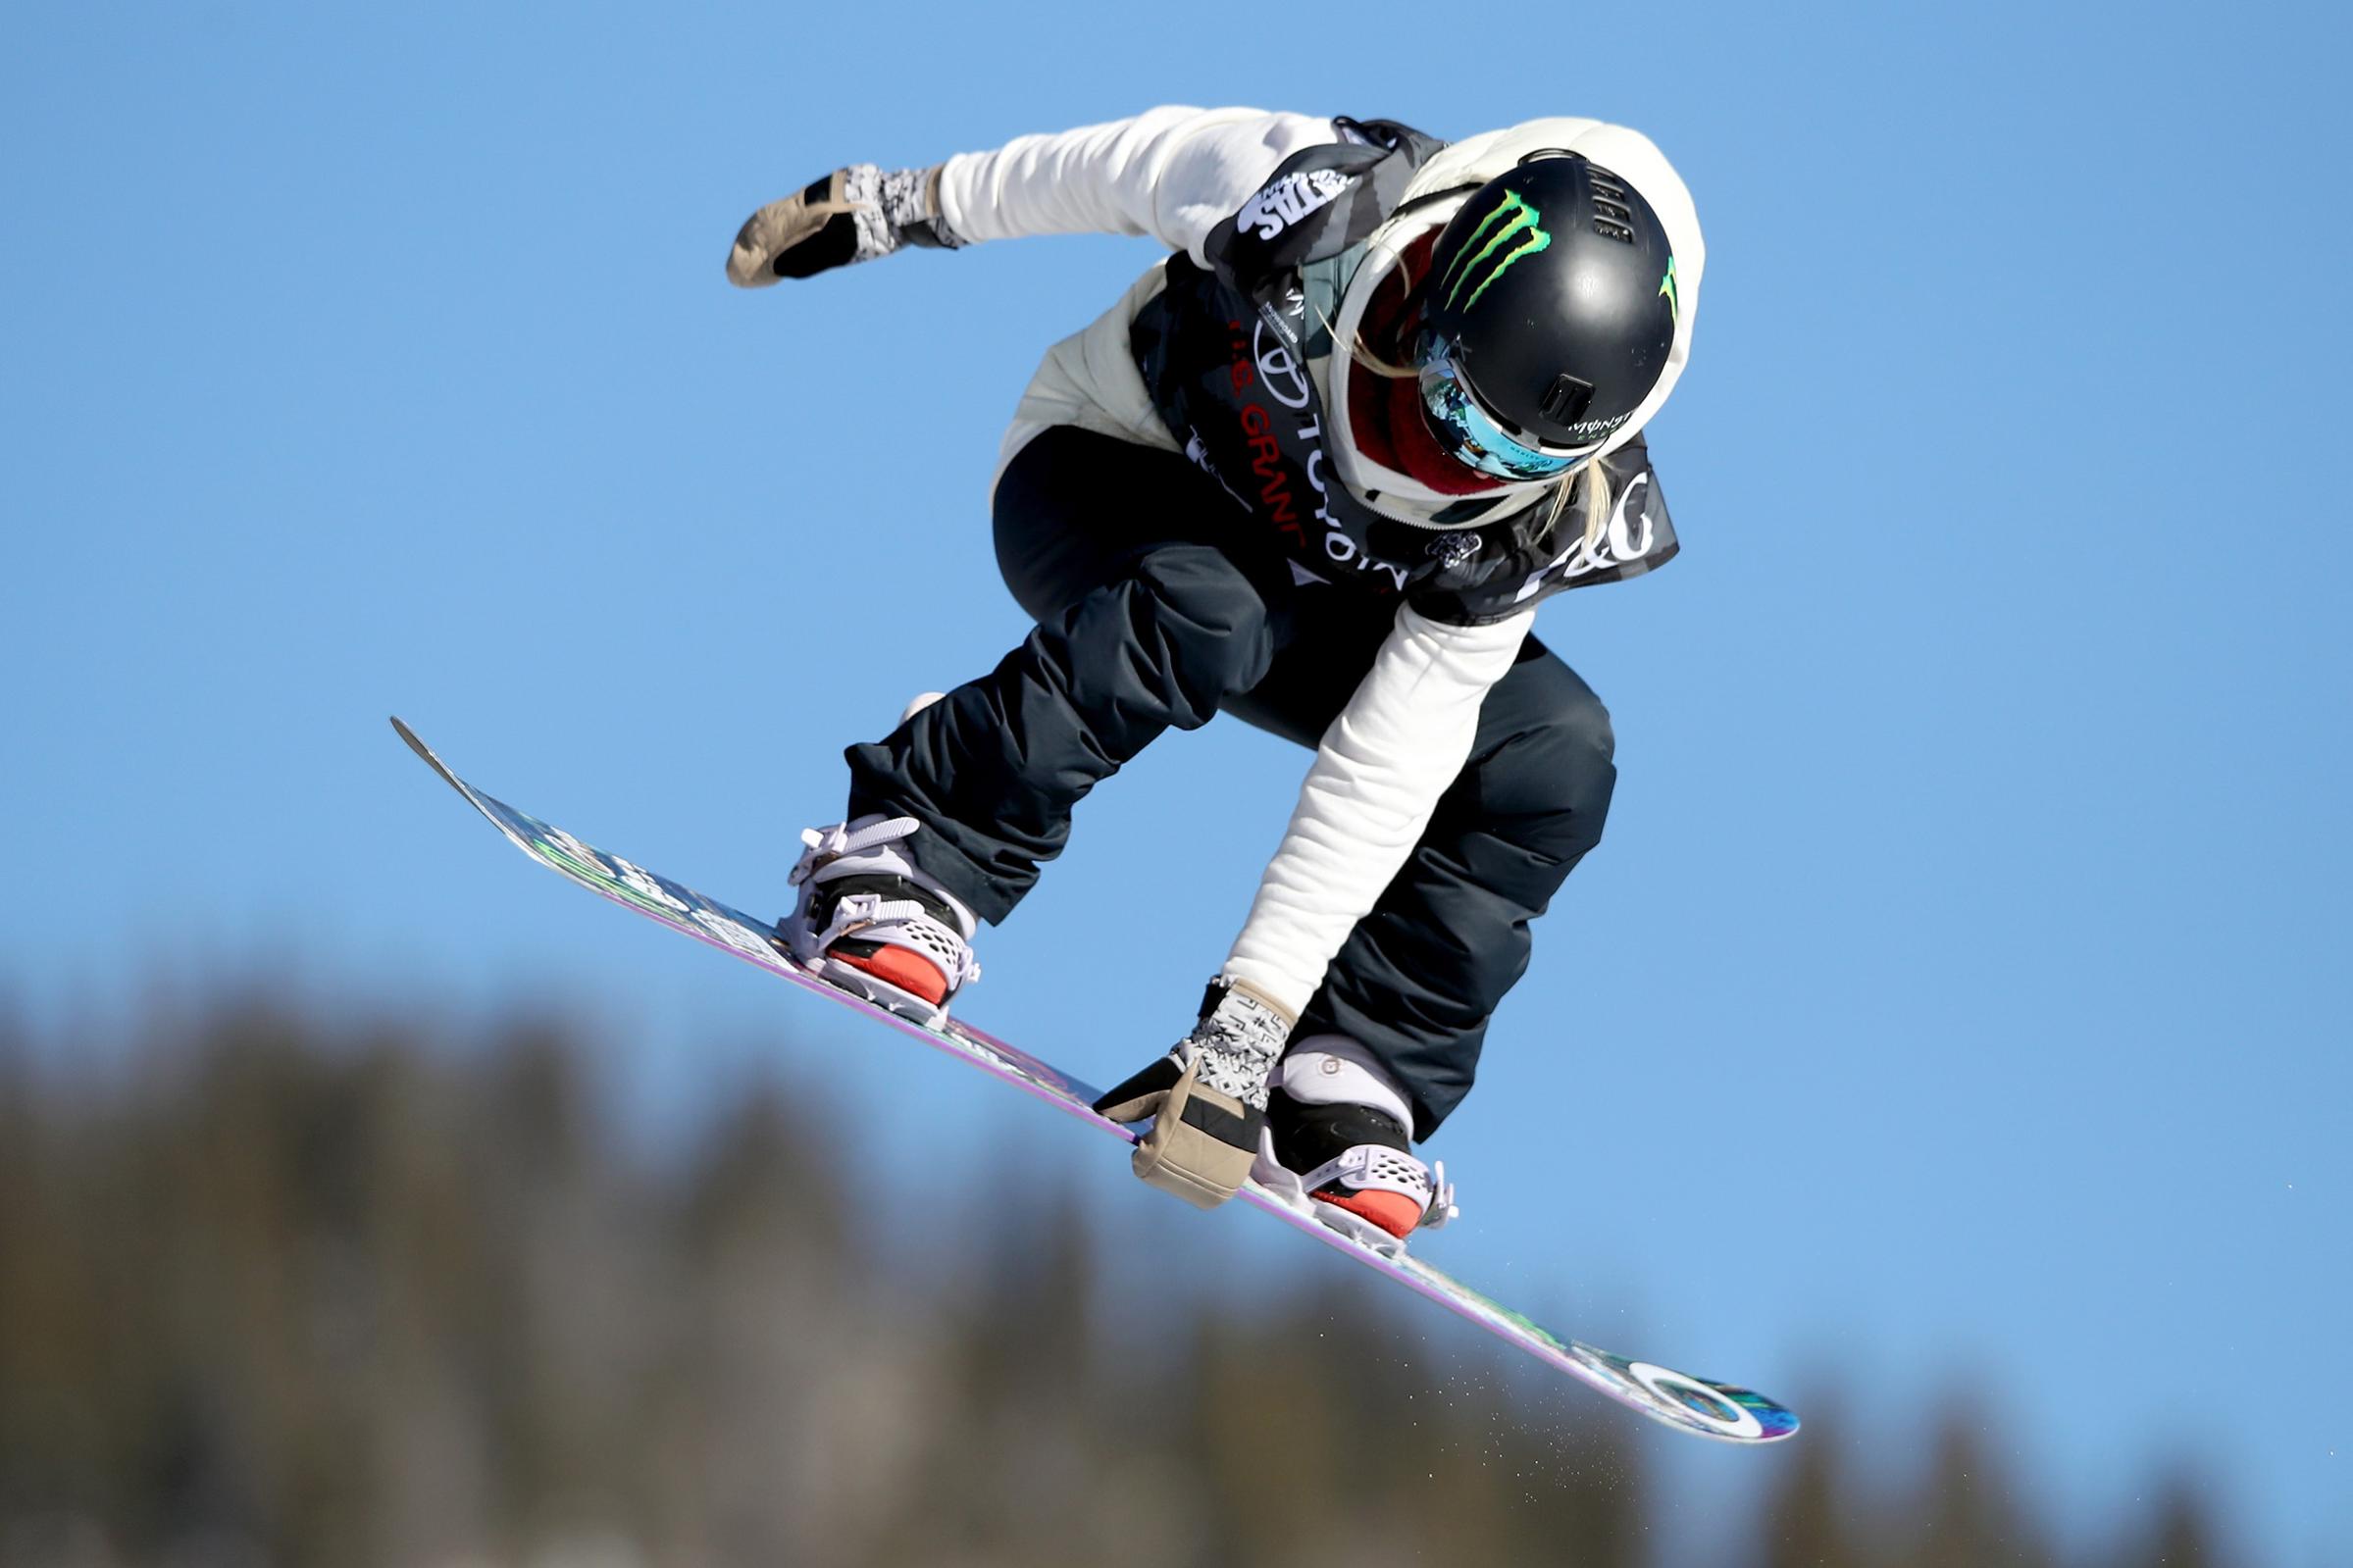 2017 U.S. Snowboarding Grand Prix at Copper - Big Air Snowboarding Finals